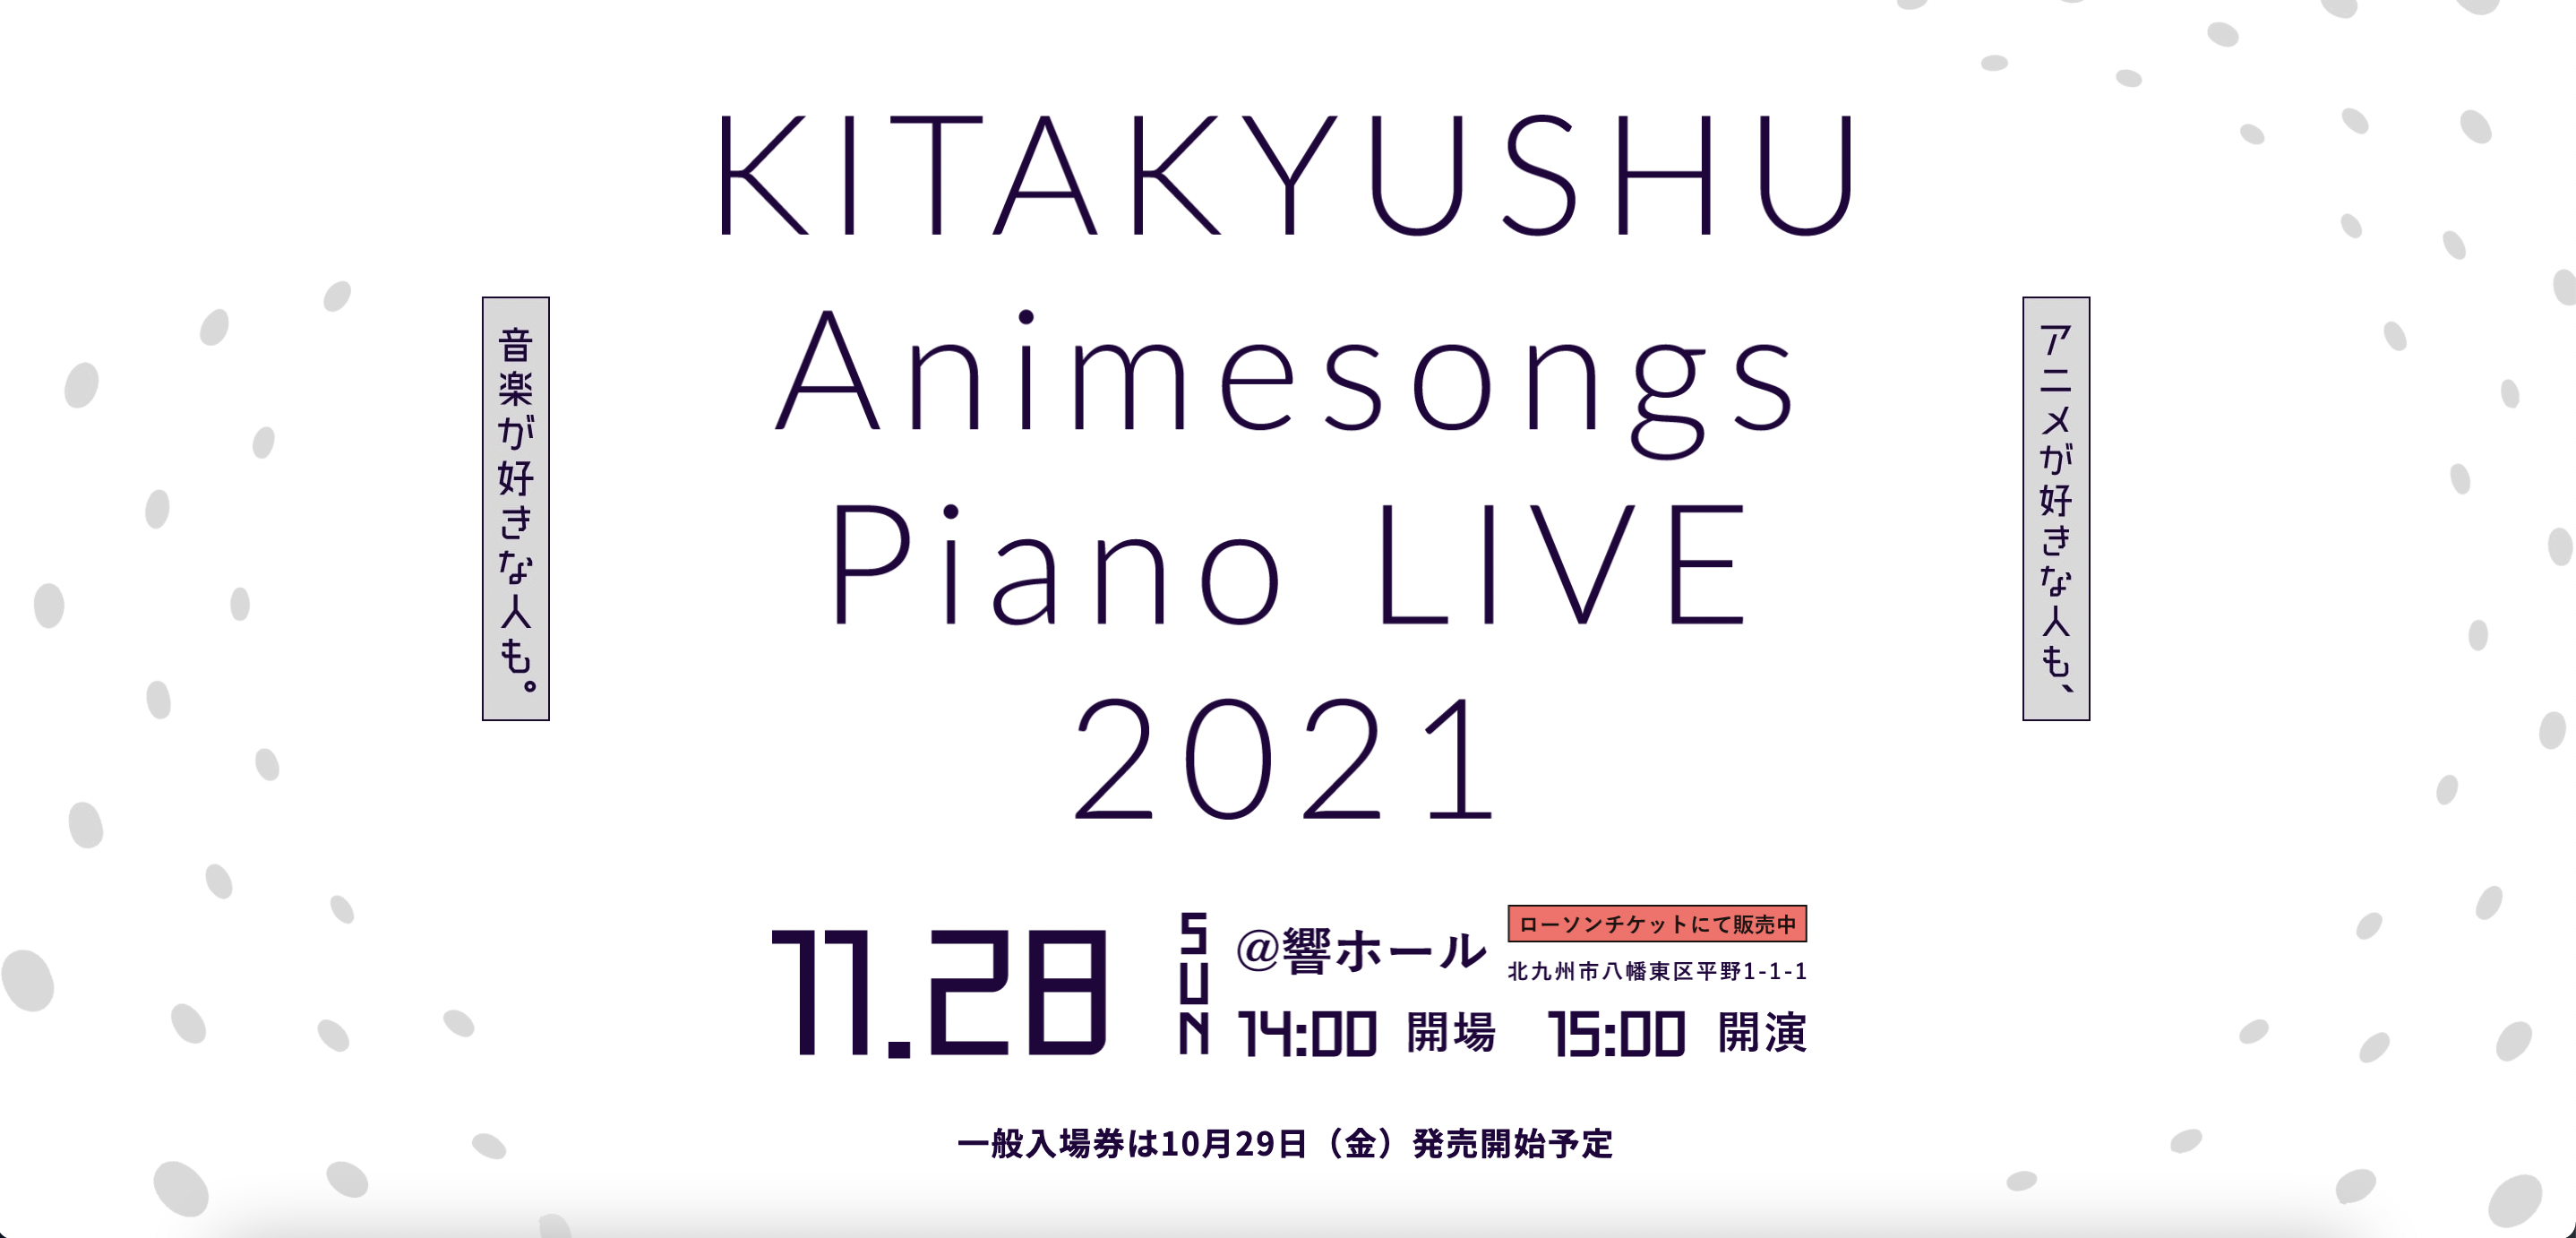 人気ピアニストたちによる アニソン コンサート Kitakyushu Animesongs Piano Live 21 11月28日 日 開催決定 合同会社dmm Comのプレスリリース